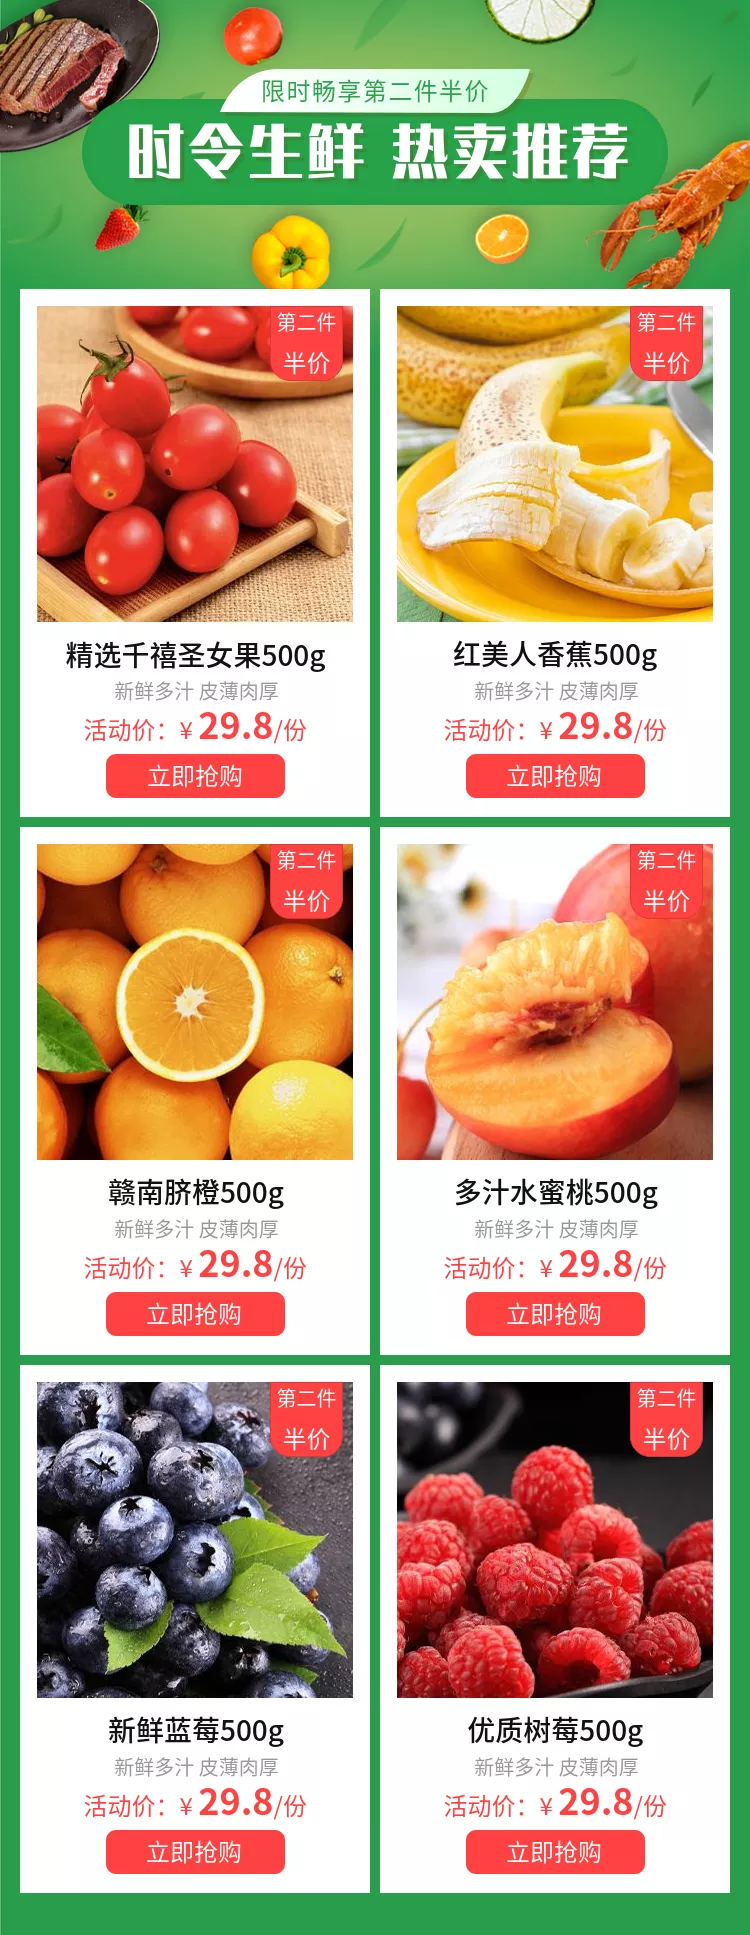 食品超市生鲜水果多商品关联列表预览效果